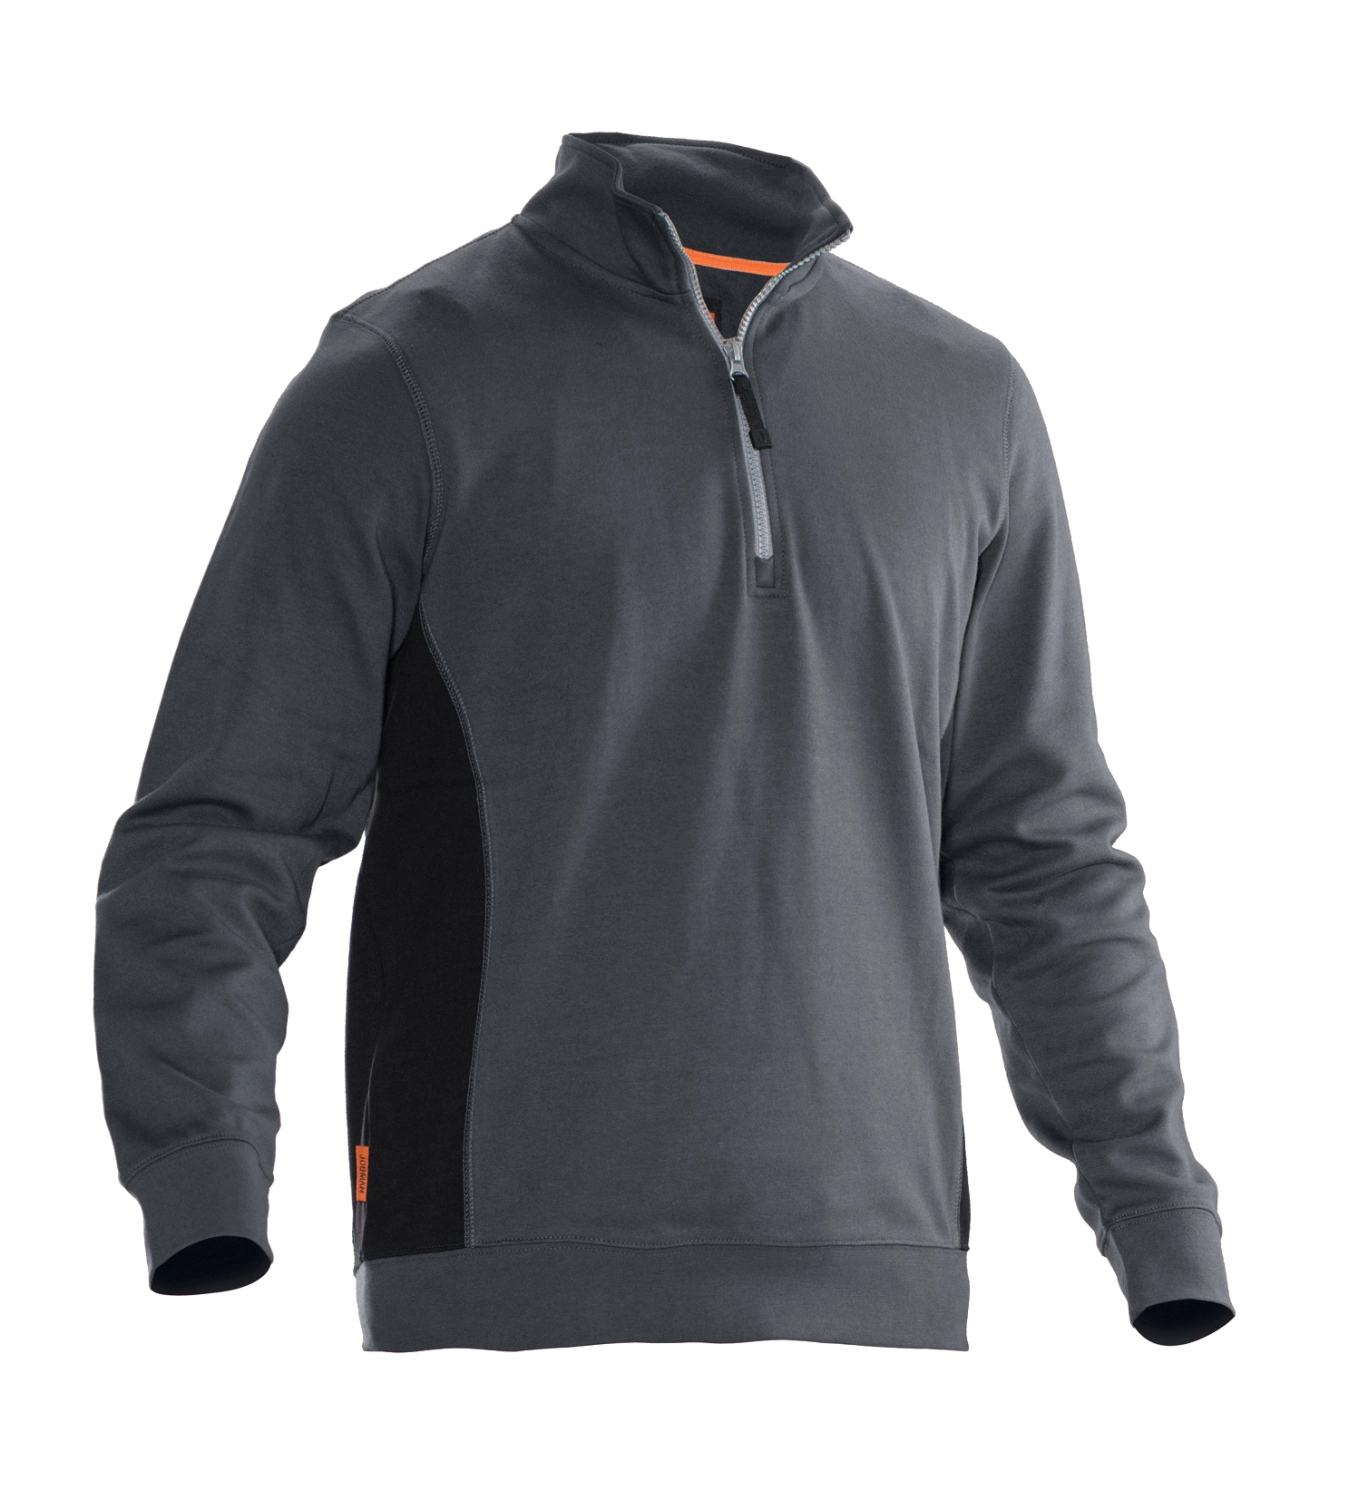 Jobman 5401 Sweatshirt met rits - Maat L - Grijs/Zwart